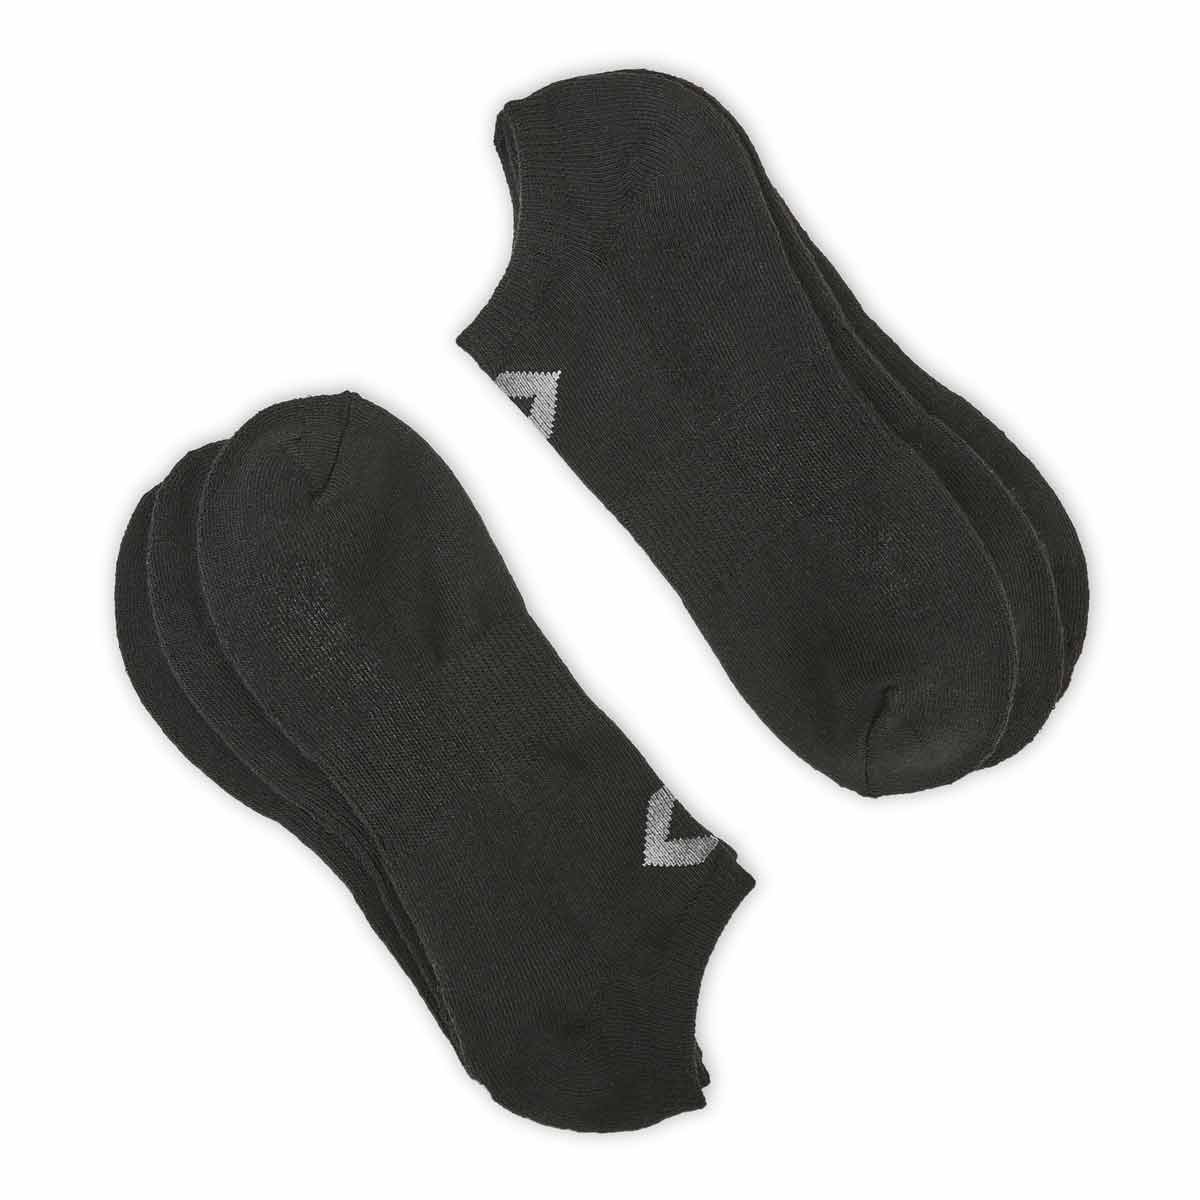 Socquettes invisibles CONVERSE noir/gris, hom, 3p